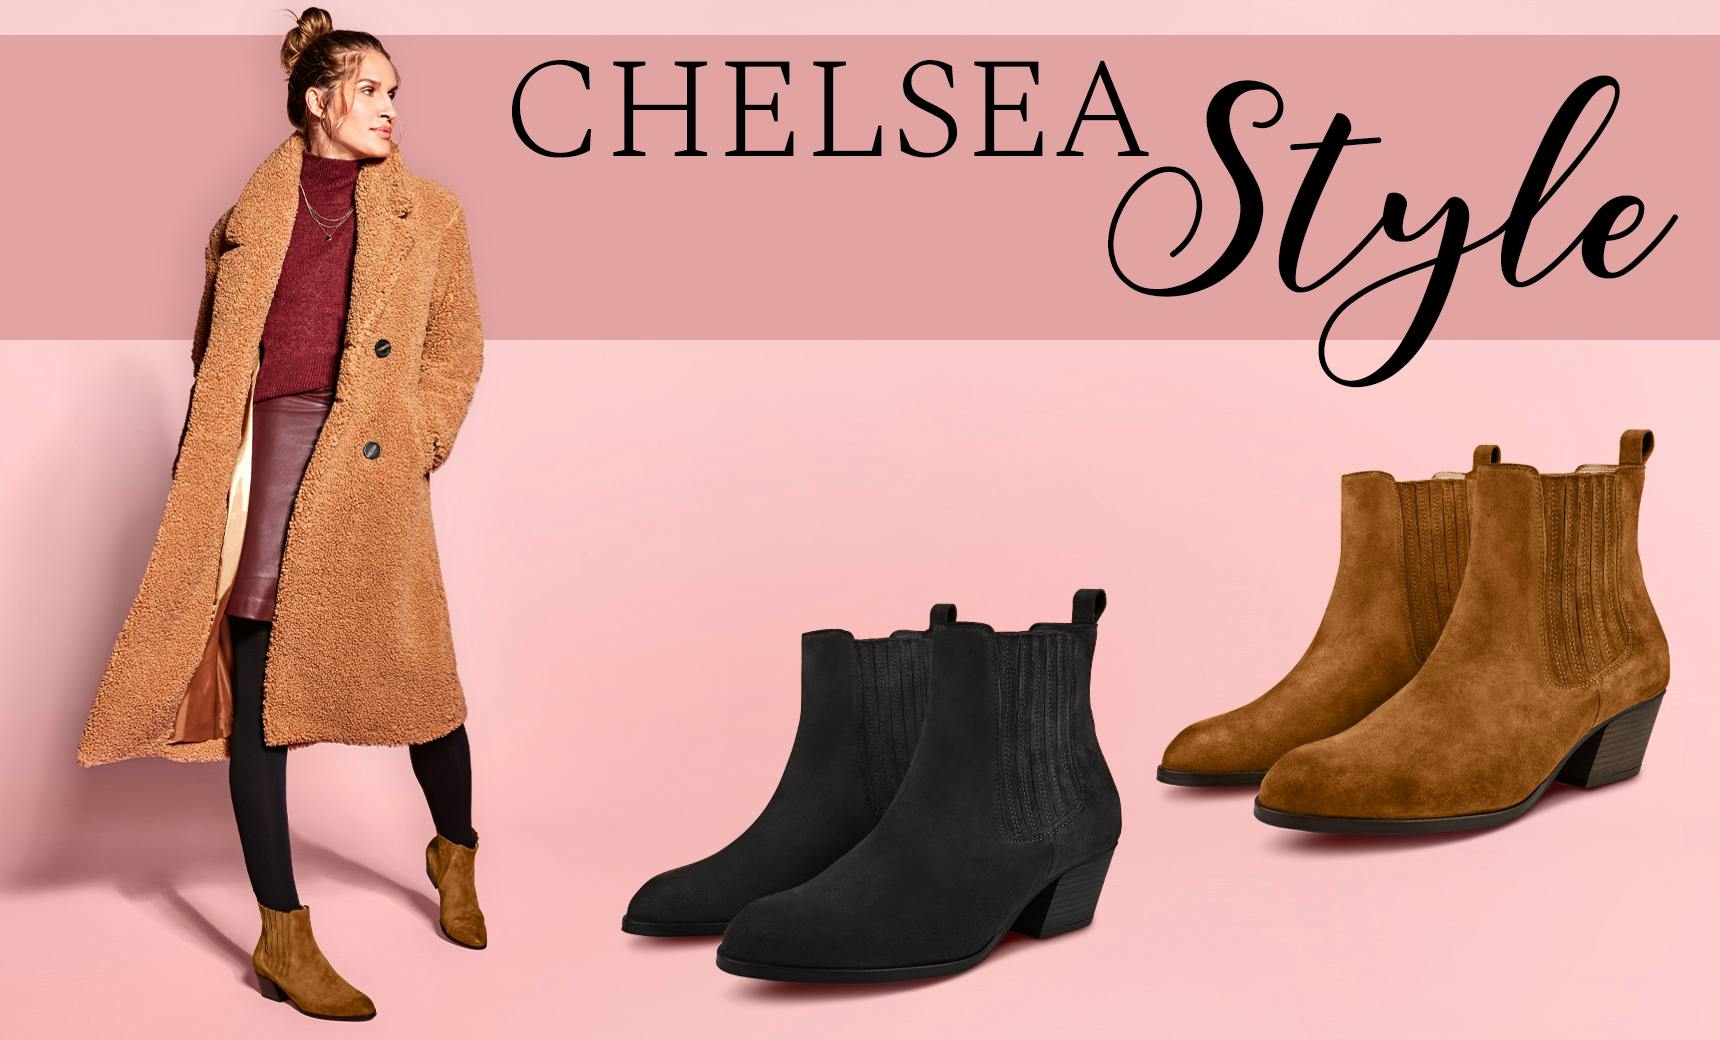 Unsere Western-Stiefelette im Chelsea Style für anspruchsvolle Füße & Hallux valgus